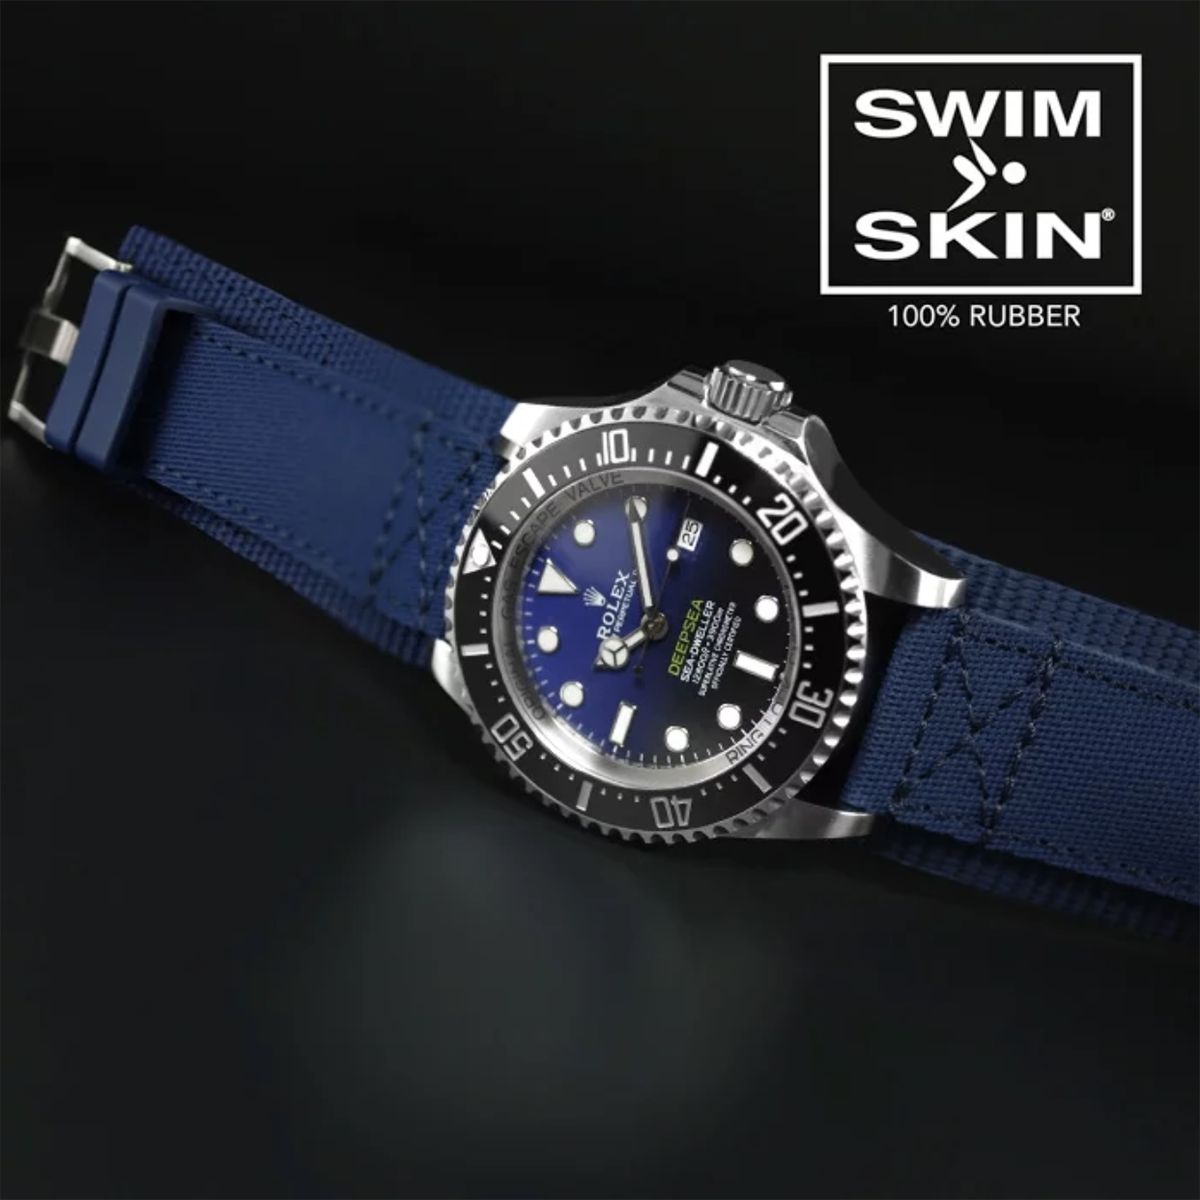 Rolex - Rubber B - Bracelet caoutchouc pour Deepsea - Série Bund - watch band leather strap - ABP Concept -